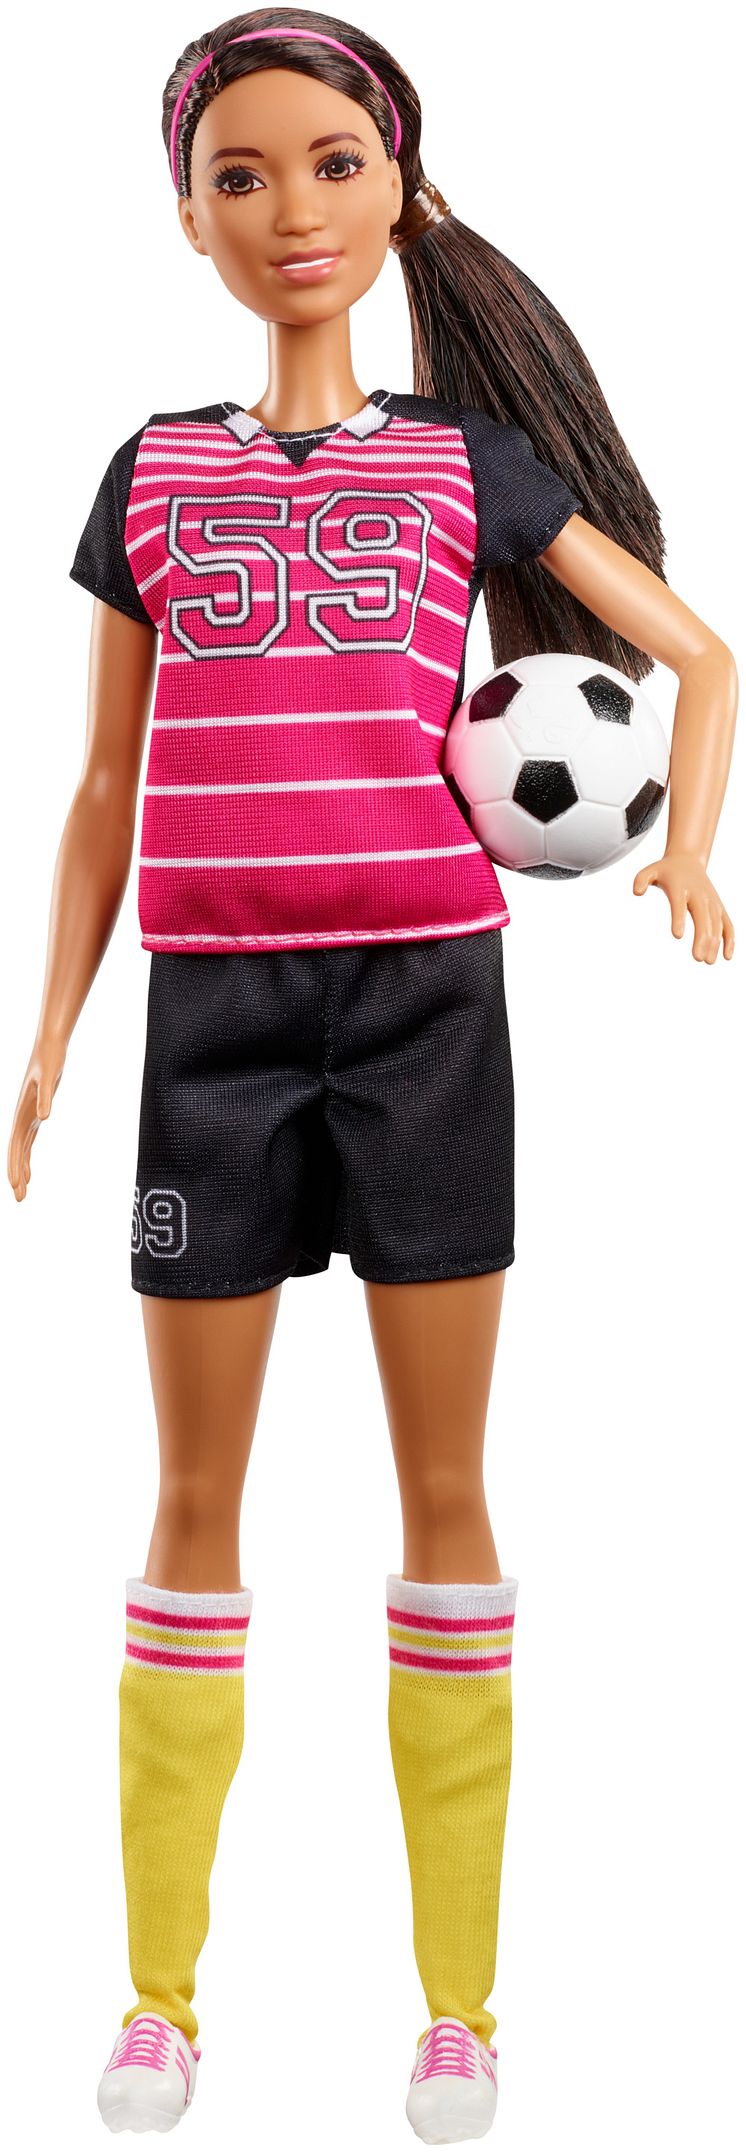 Barbie 60. Jubiläum Karriere-Puppe Sportlerin